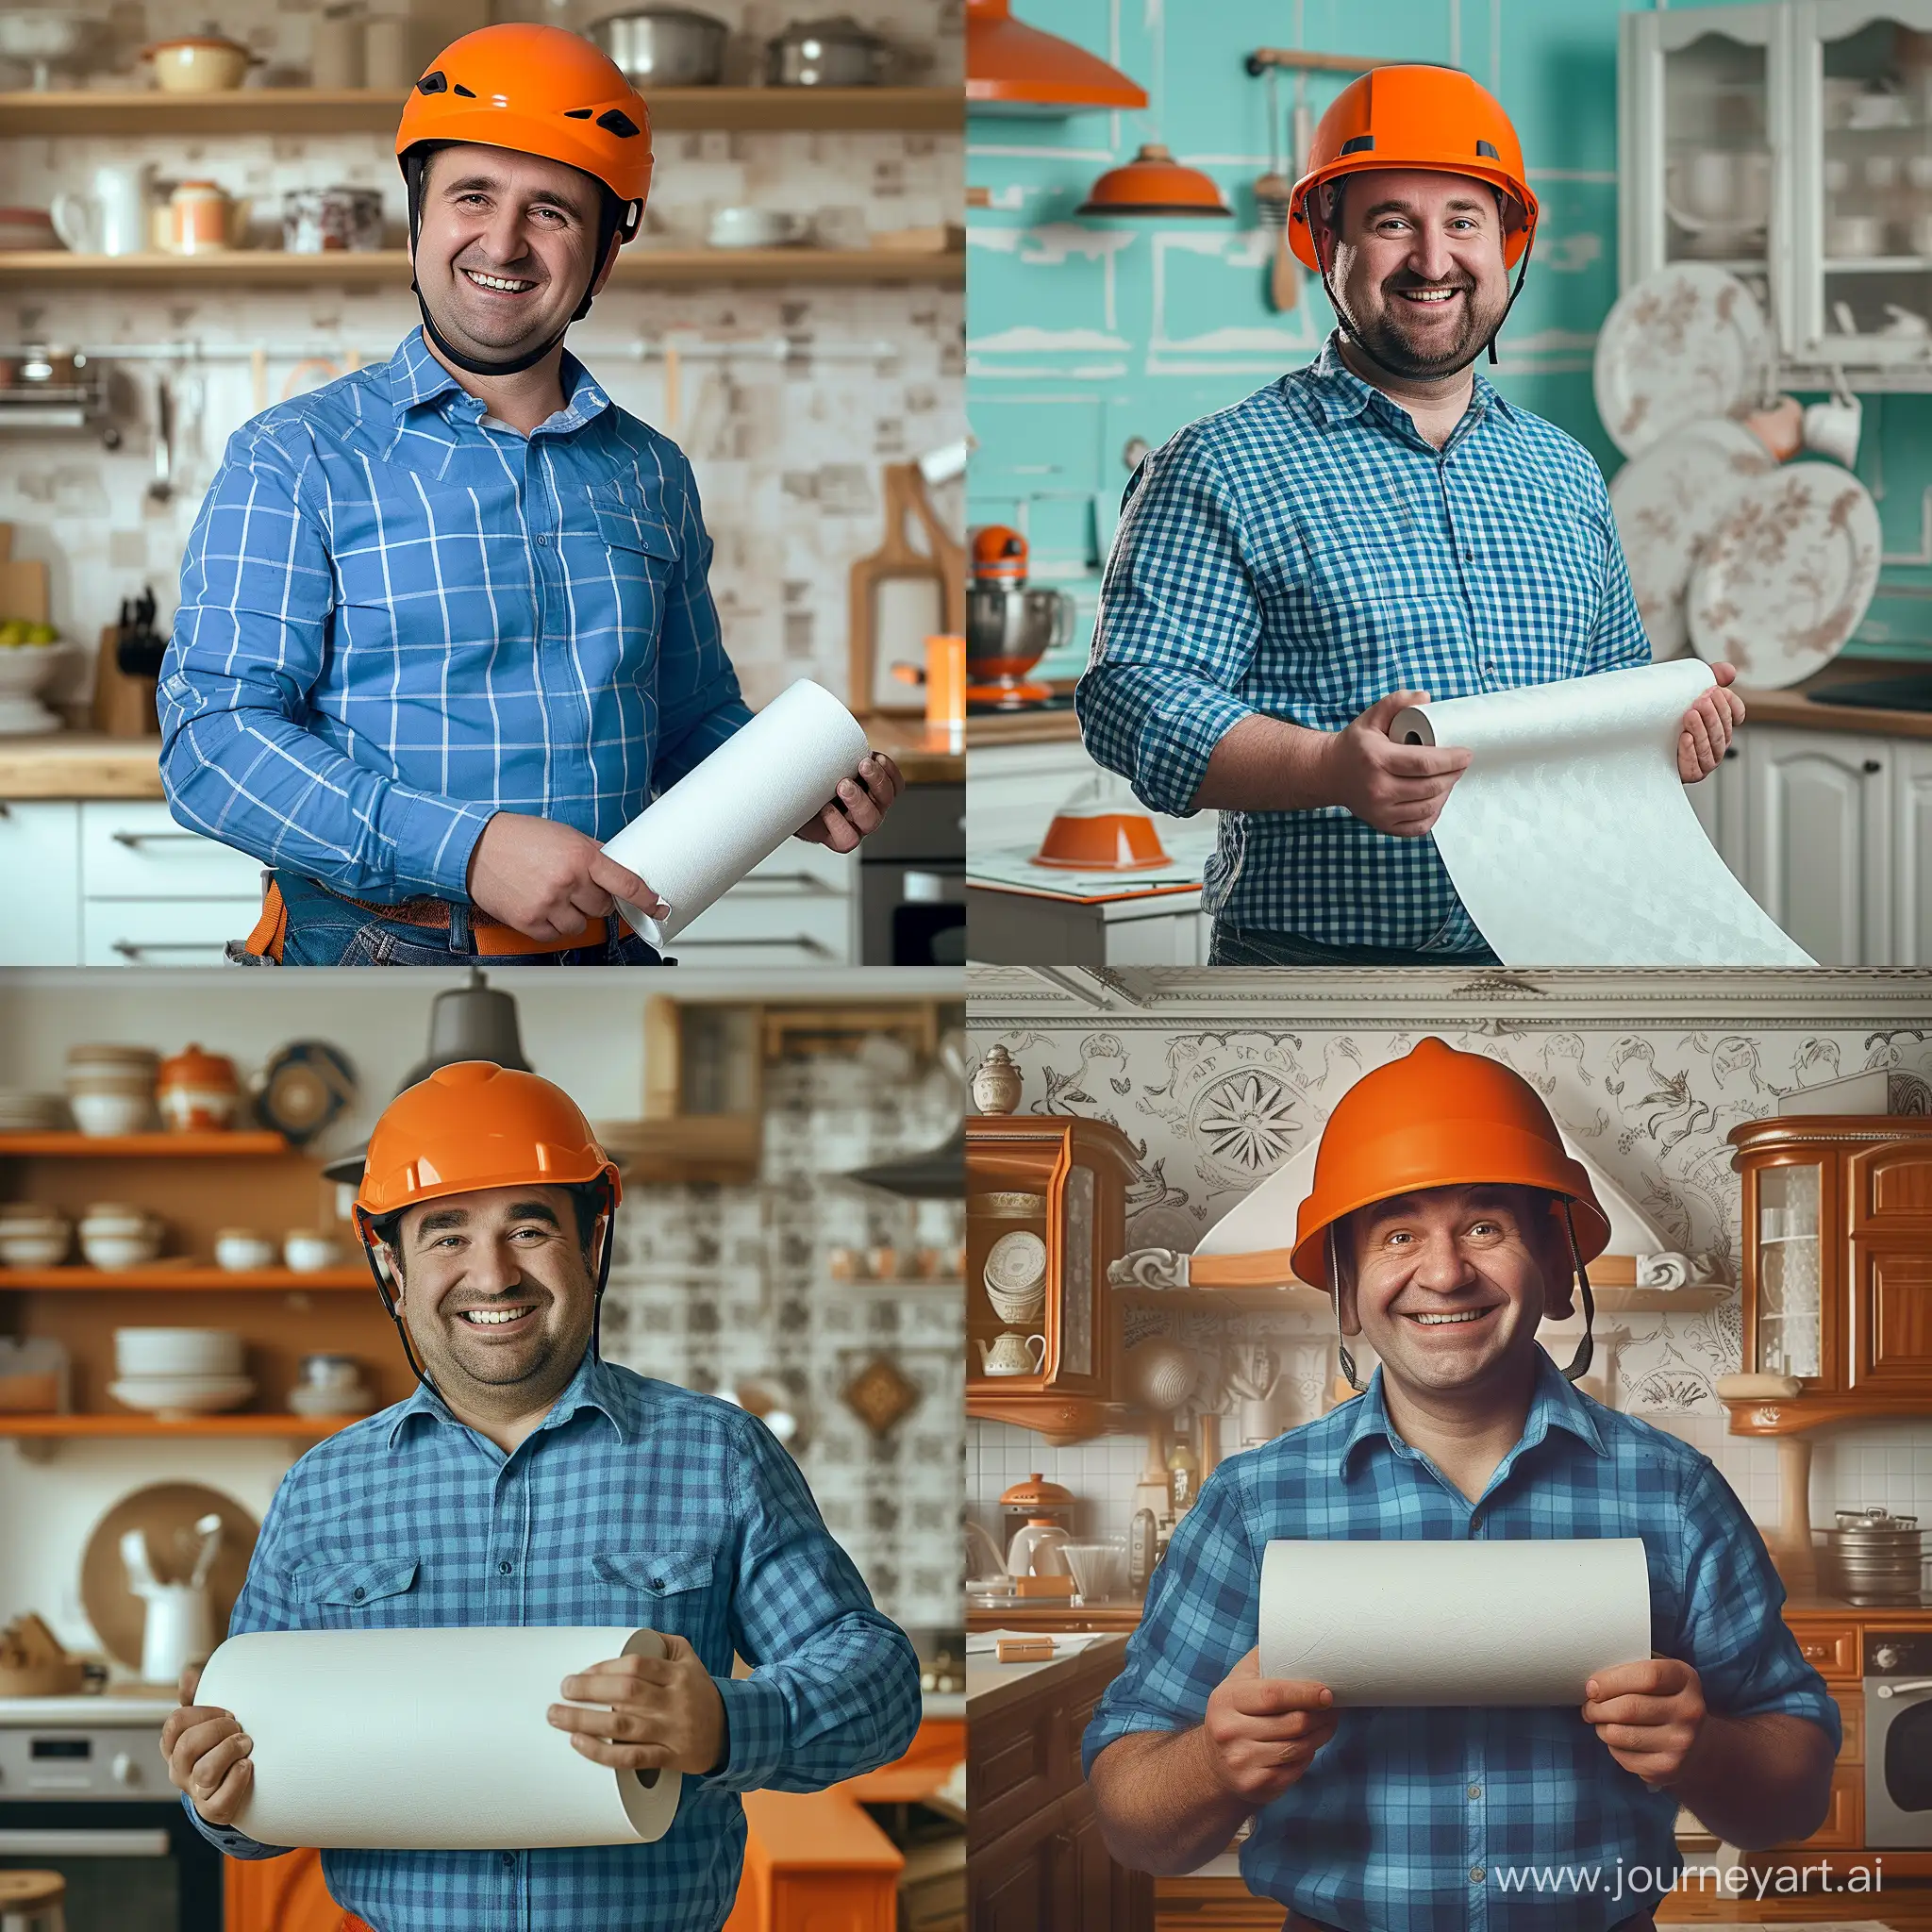 Улыбающийся мужчина, немного полноватый, в оранжевой каске, держит в руках рулон белых обоев, в синей клетчатой рубашке, на фоне кухонный гарнитур